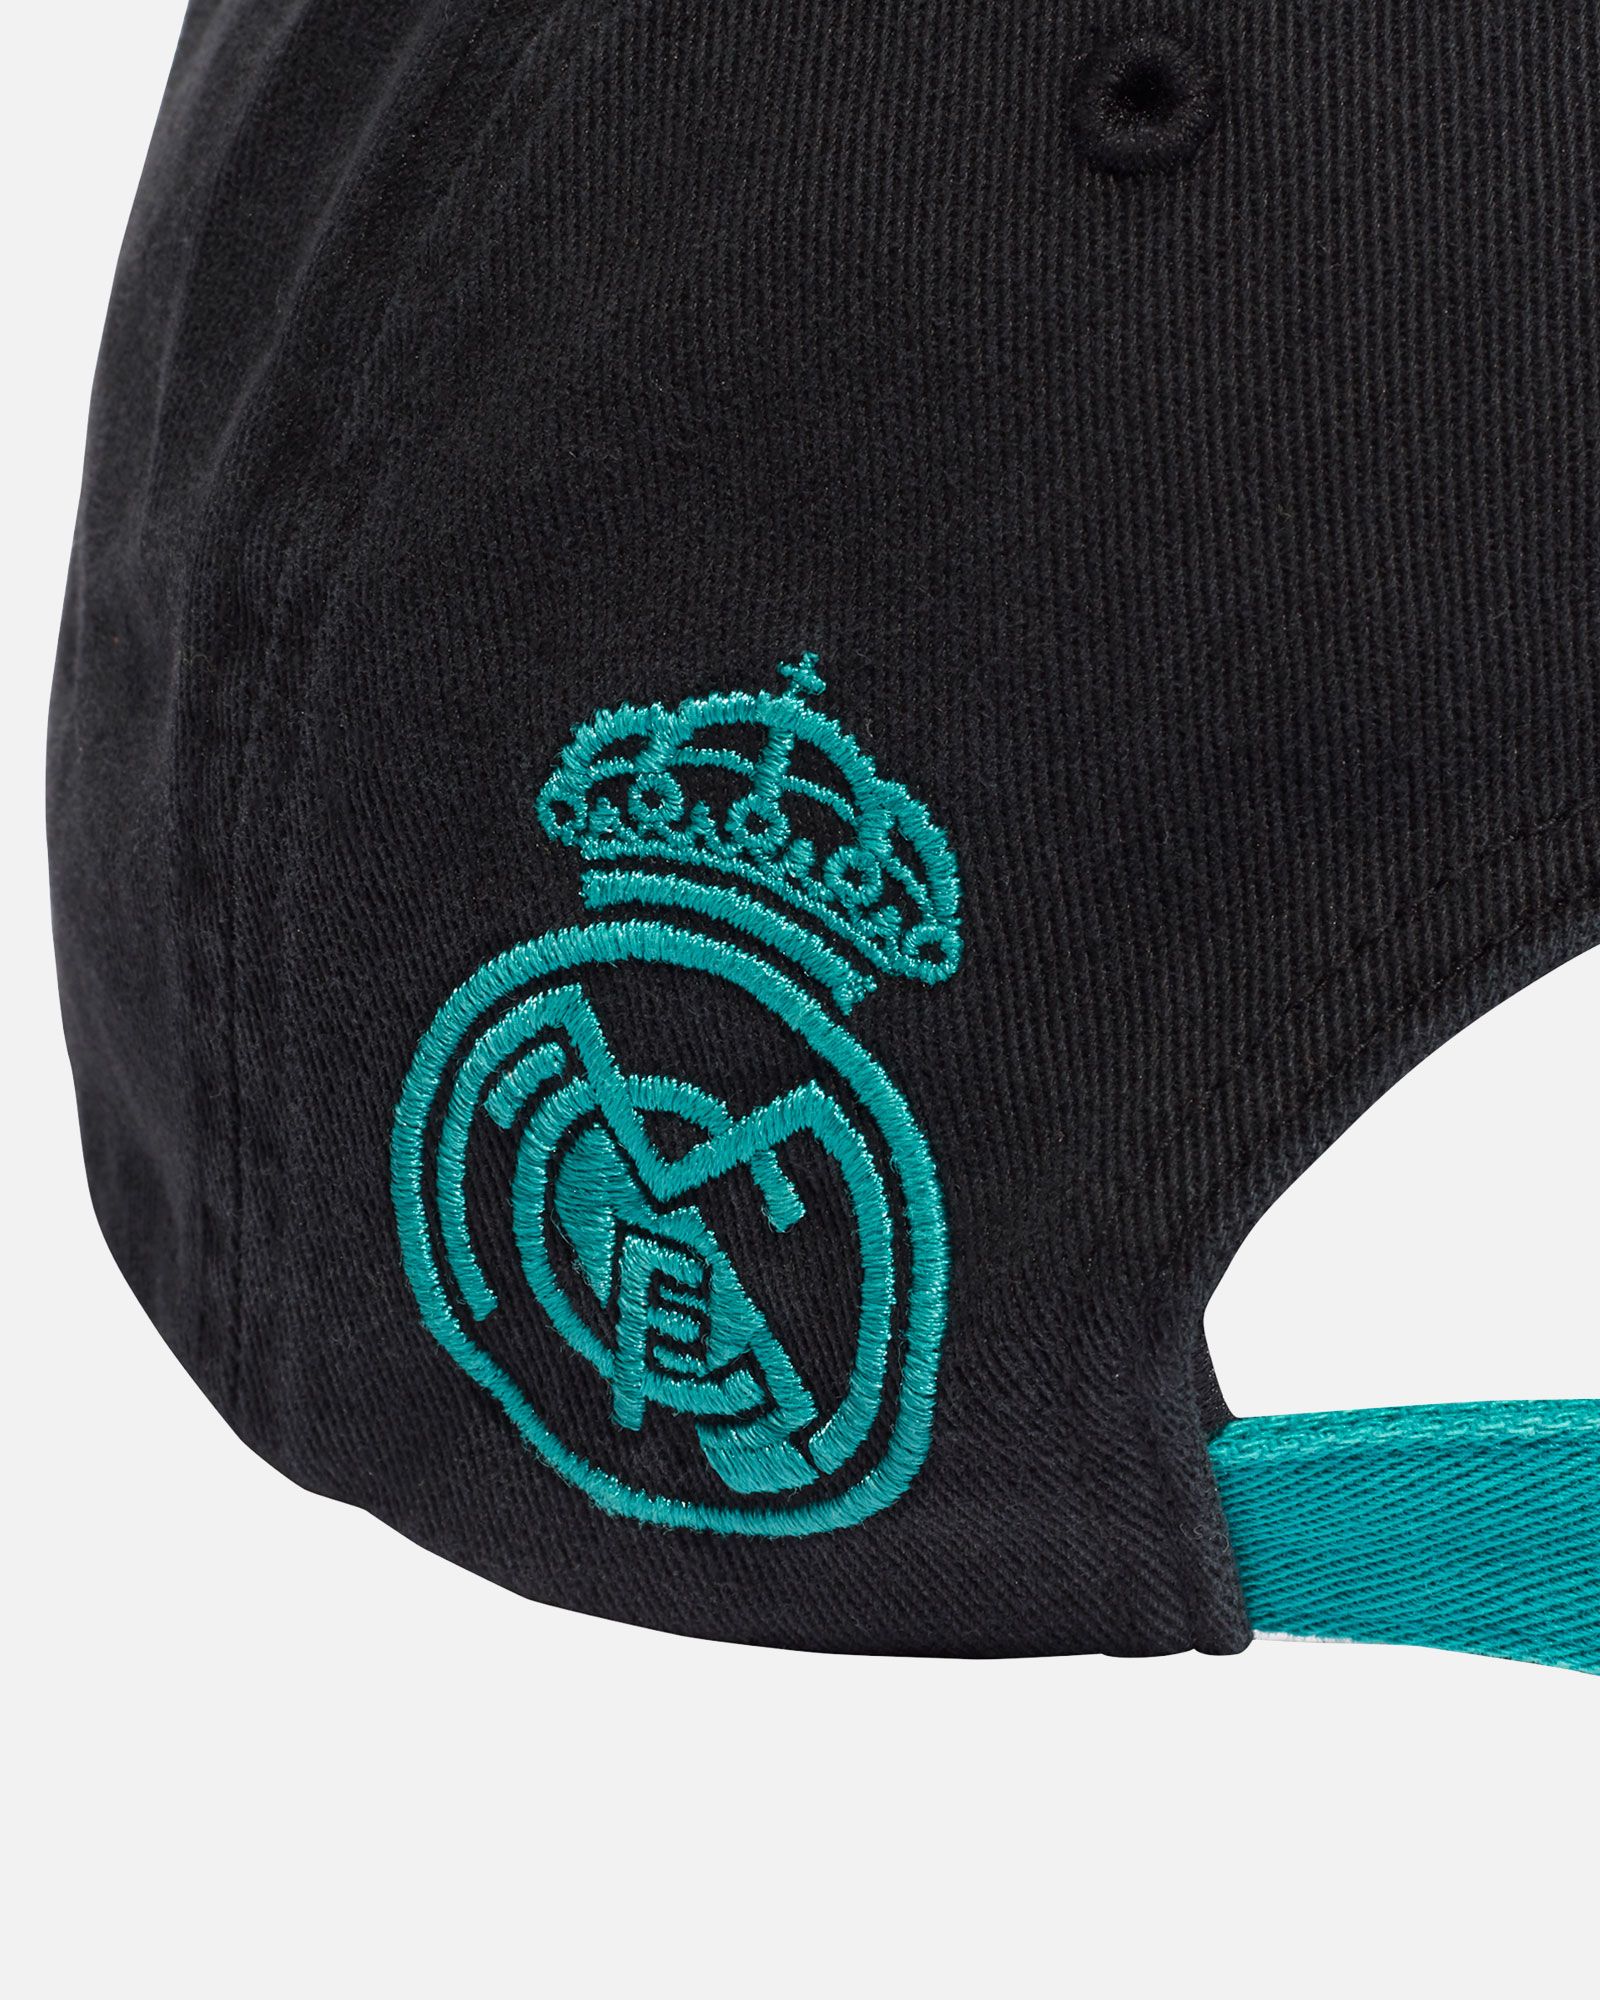 Gorra adidas del Real Madrid de color negro